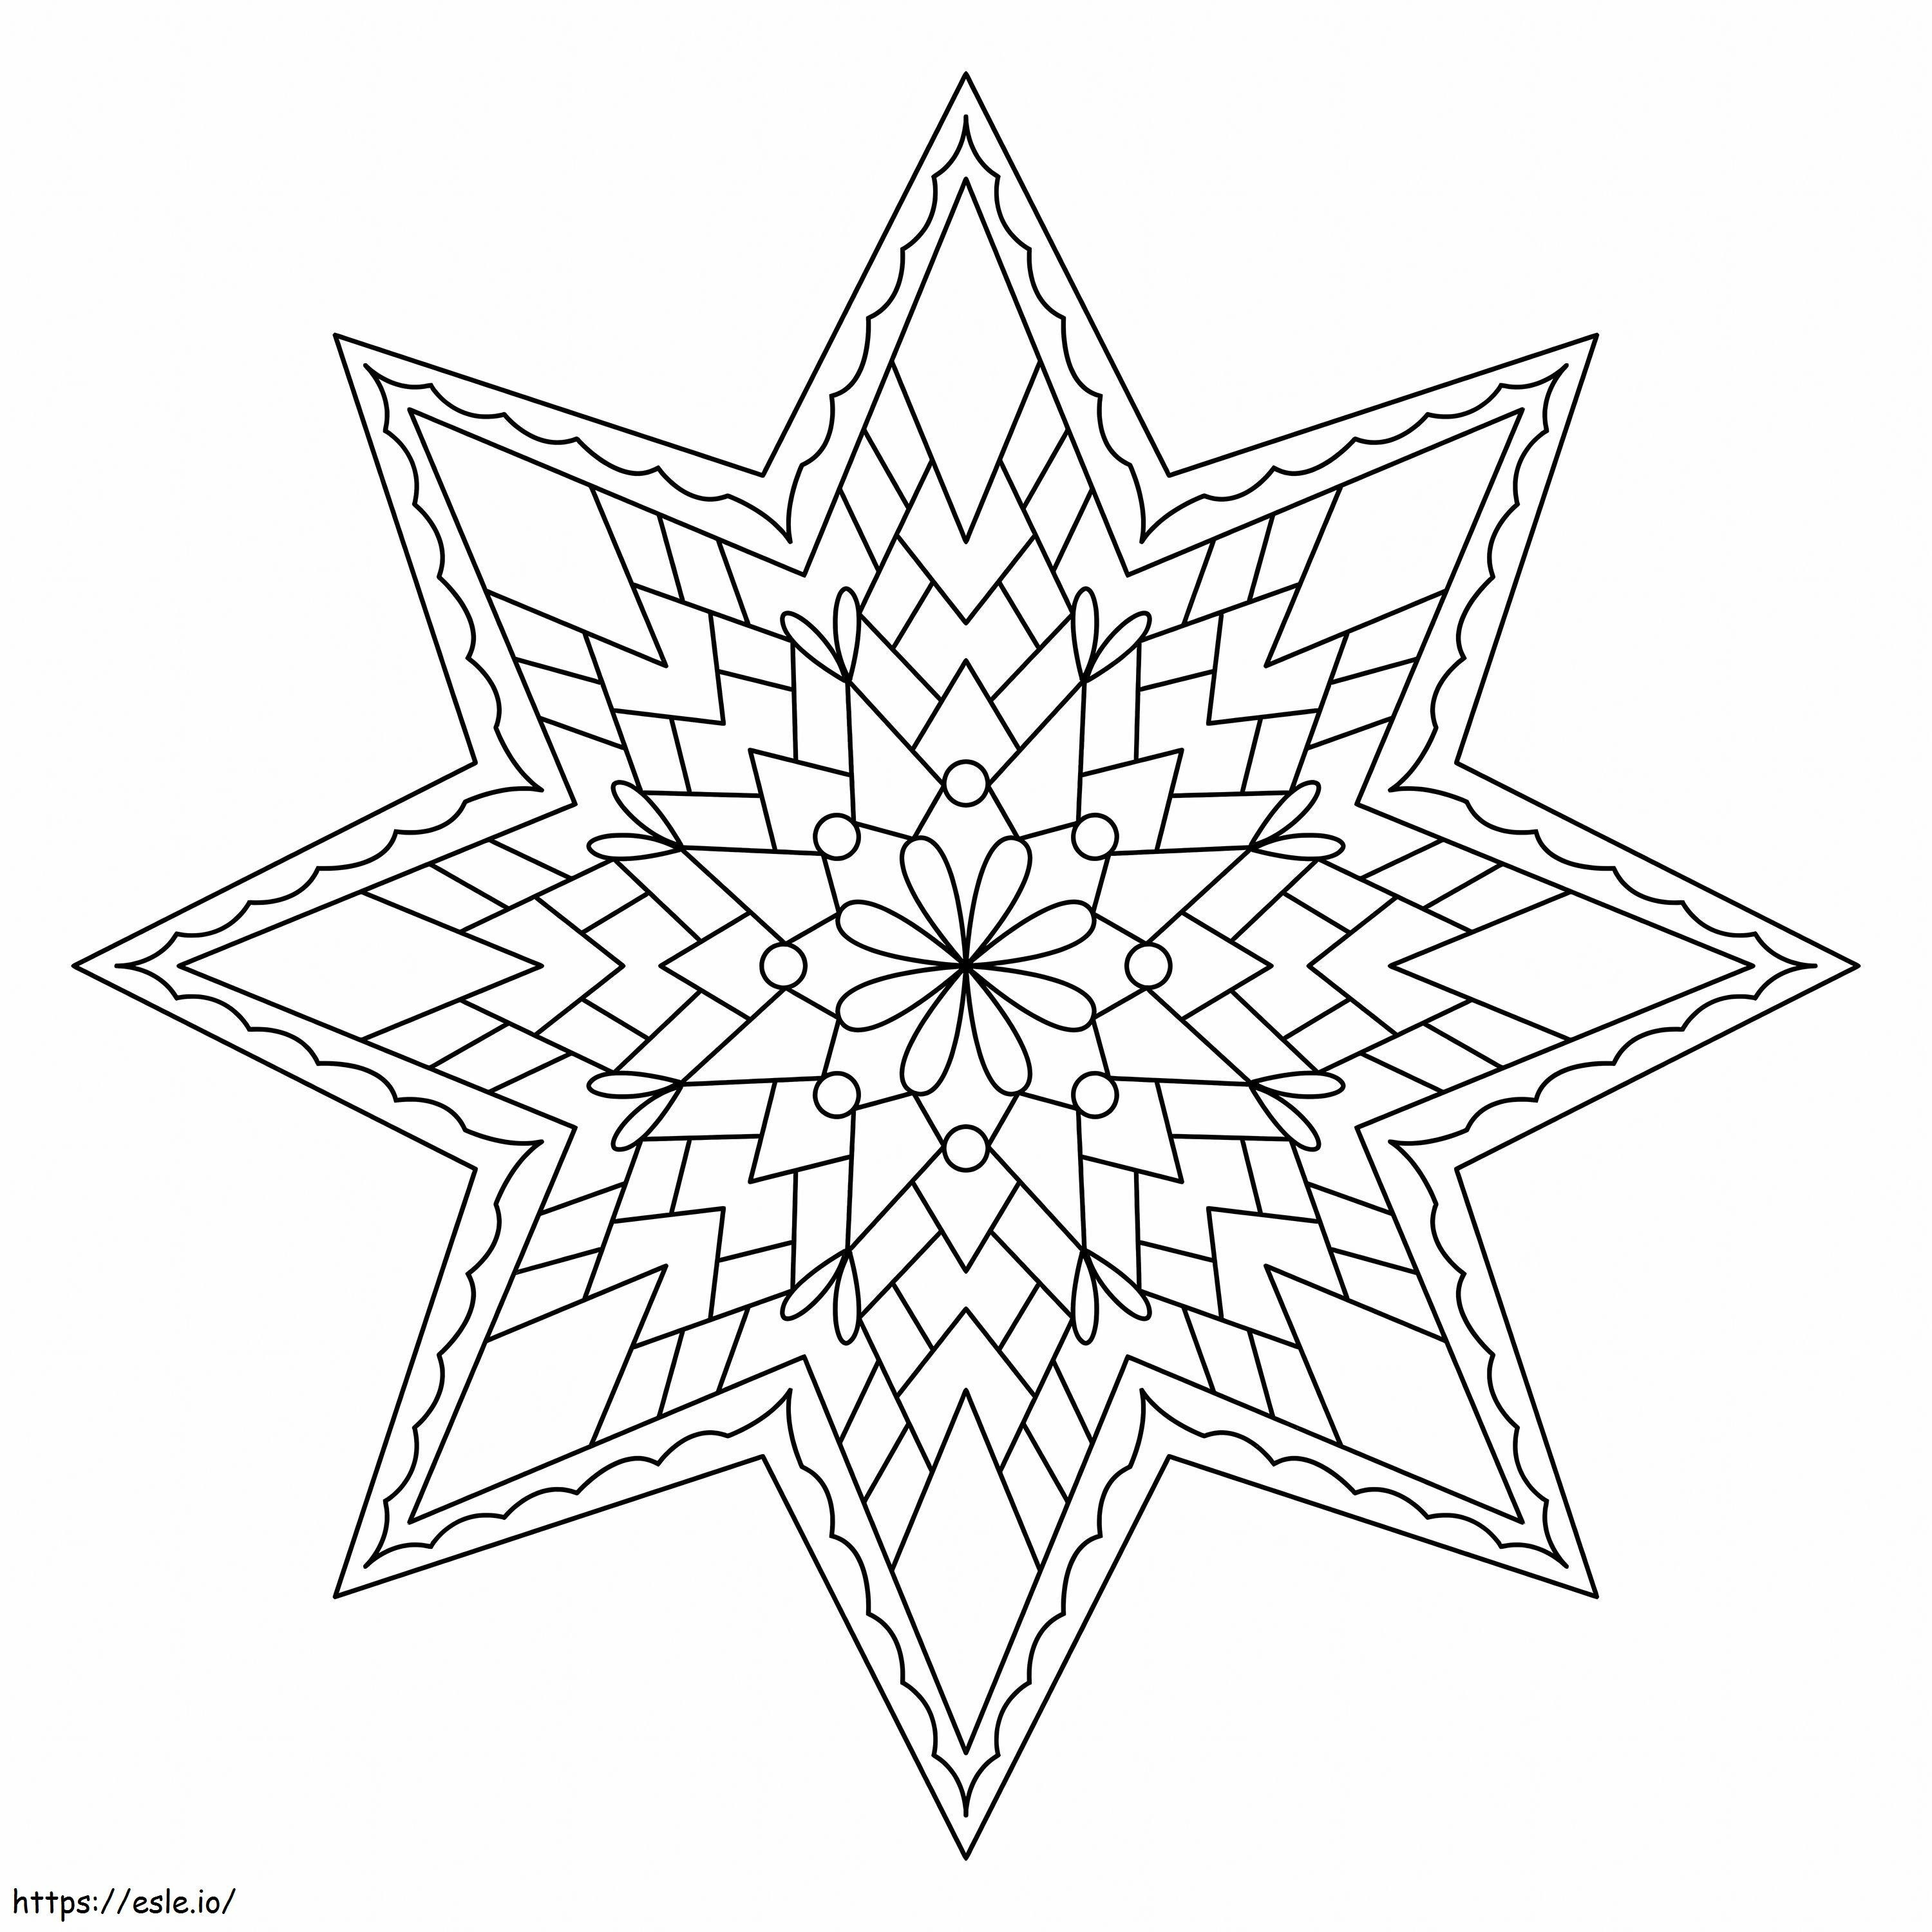 Coloriage Étoile Zentangle à imprimer dessin